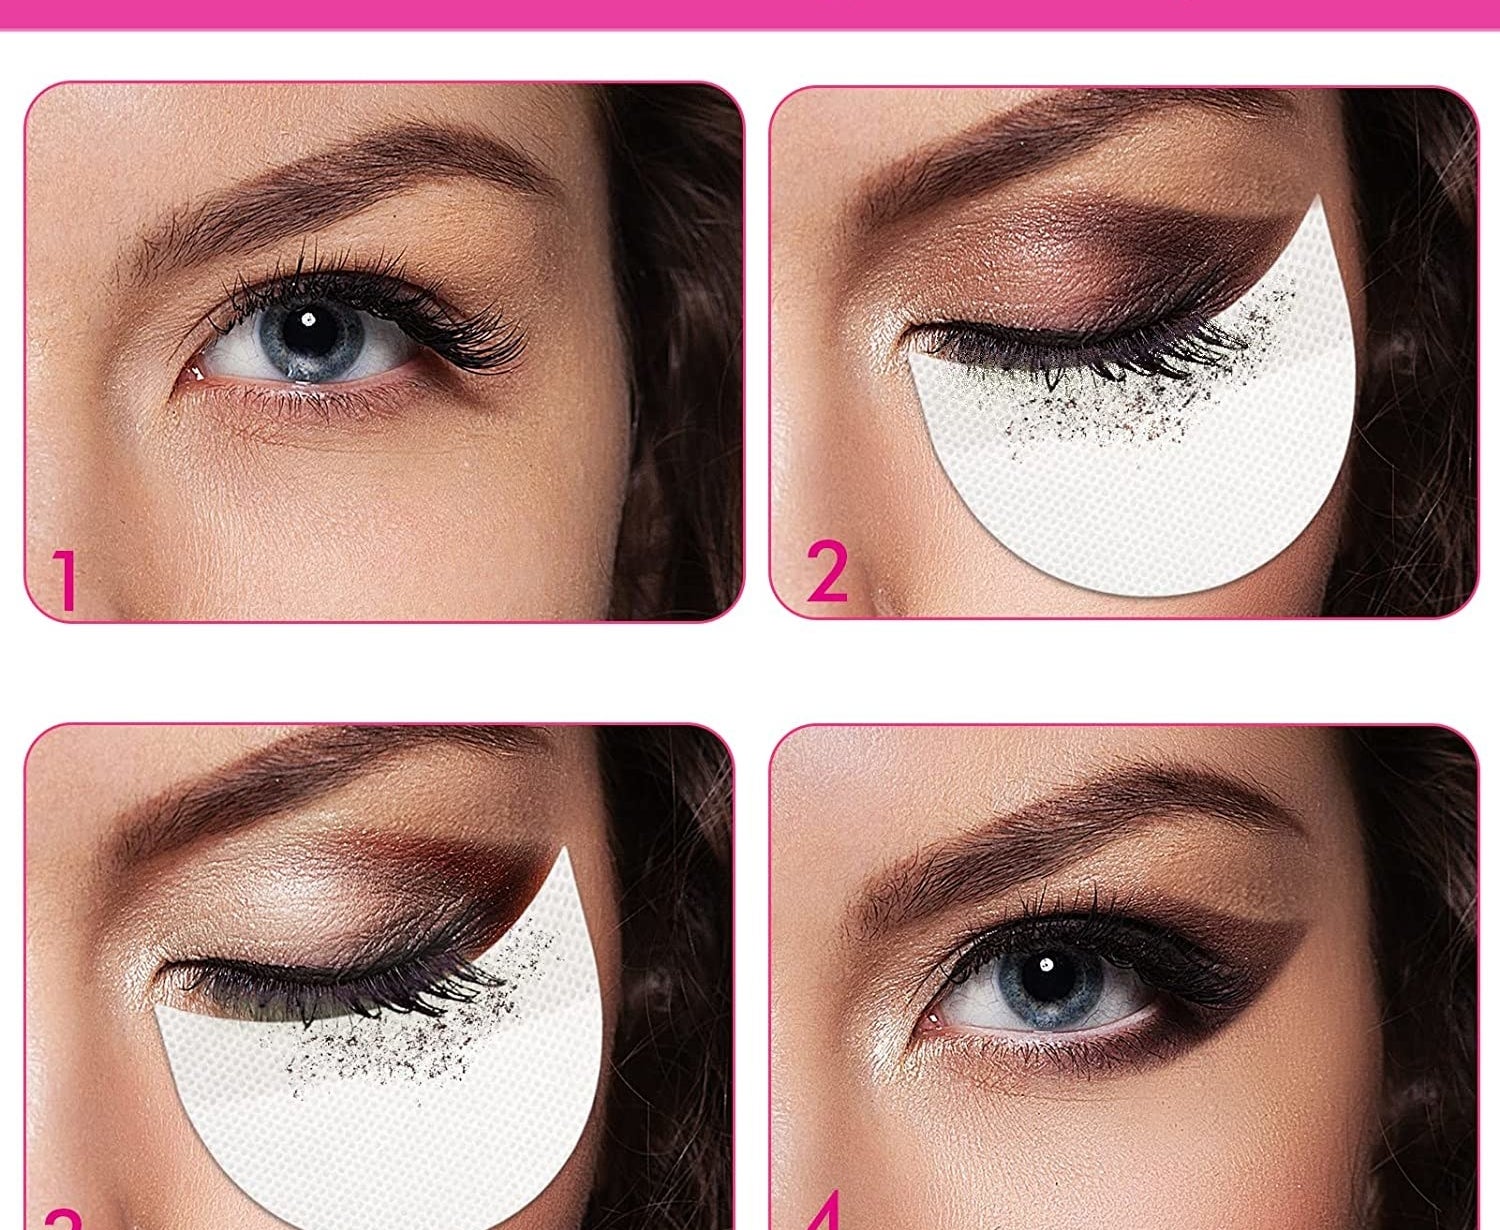 四个步骤的眼影看起来使用eyshadow创建的盾牌过度化妆,落在眼睛下面